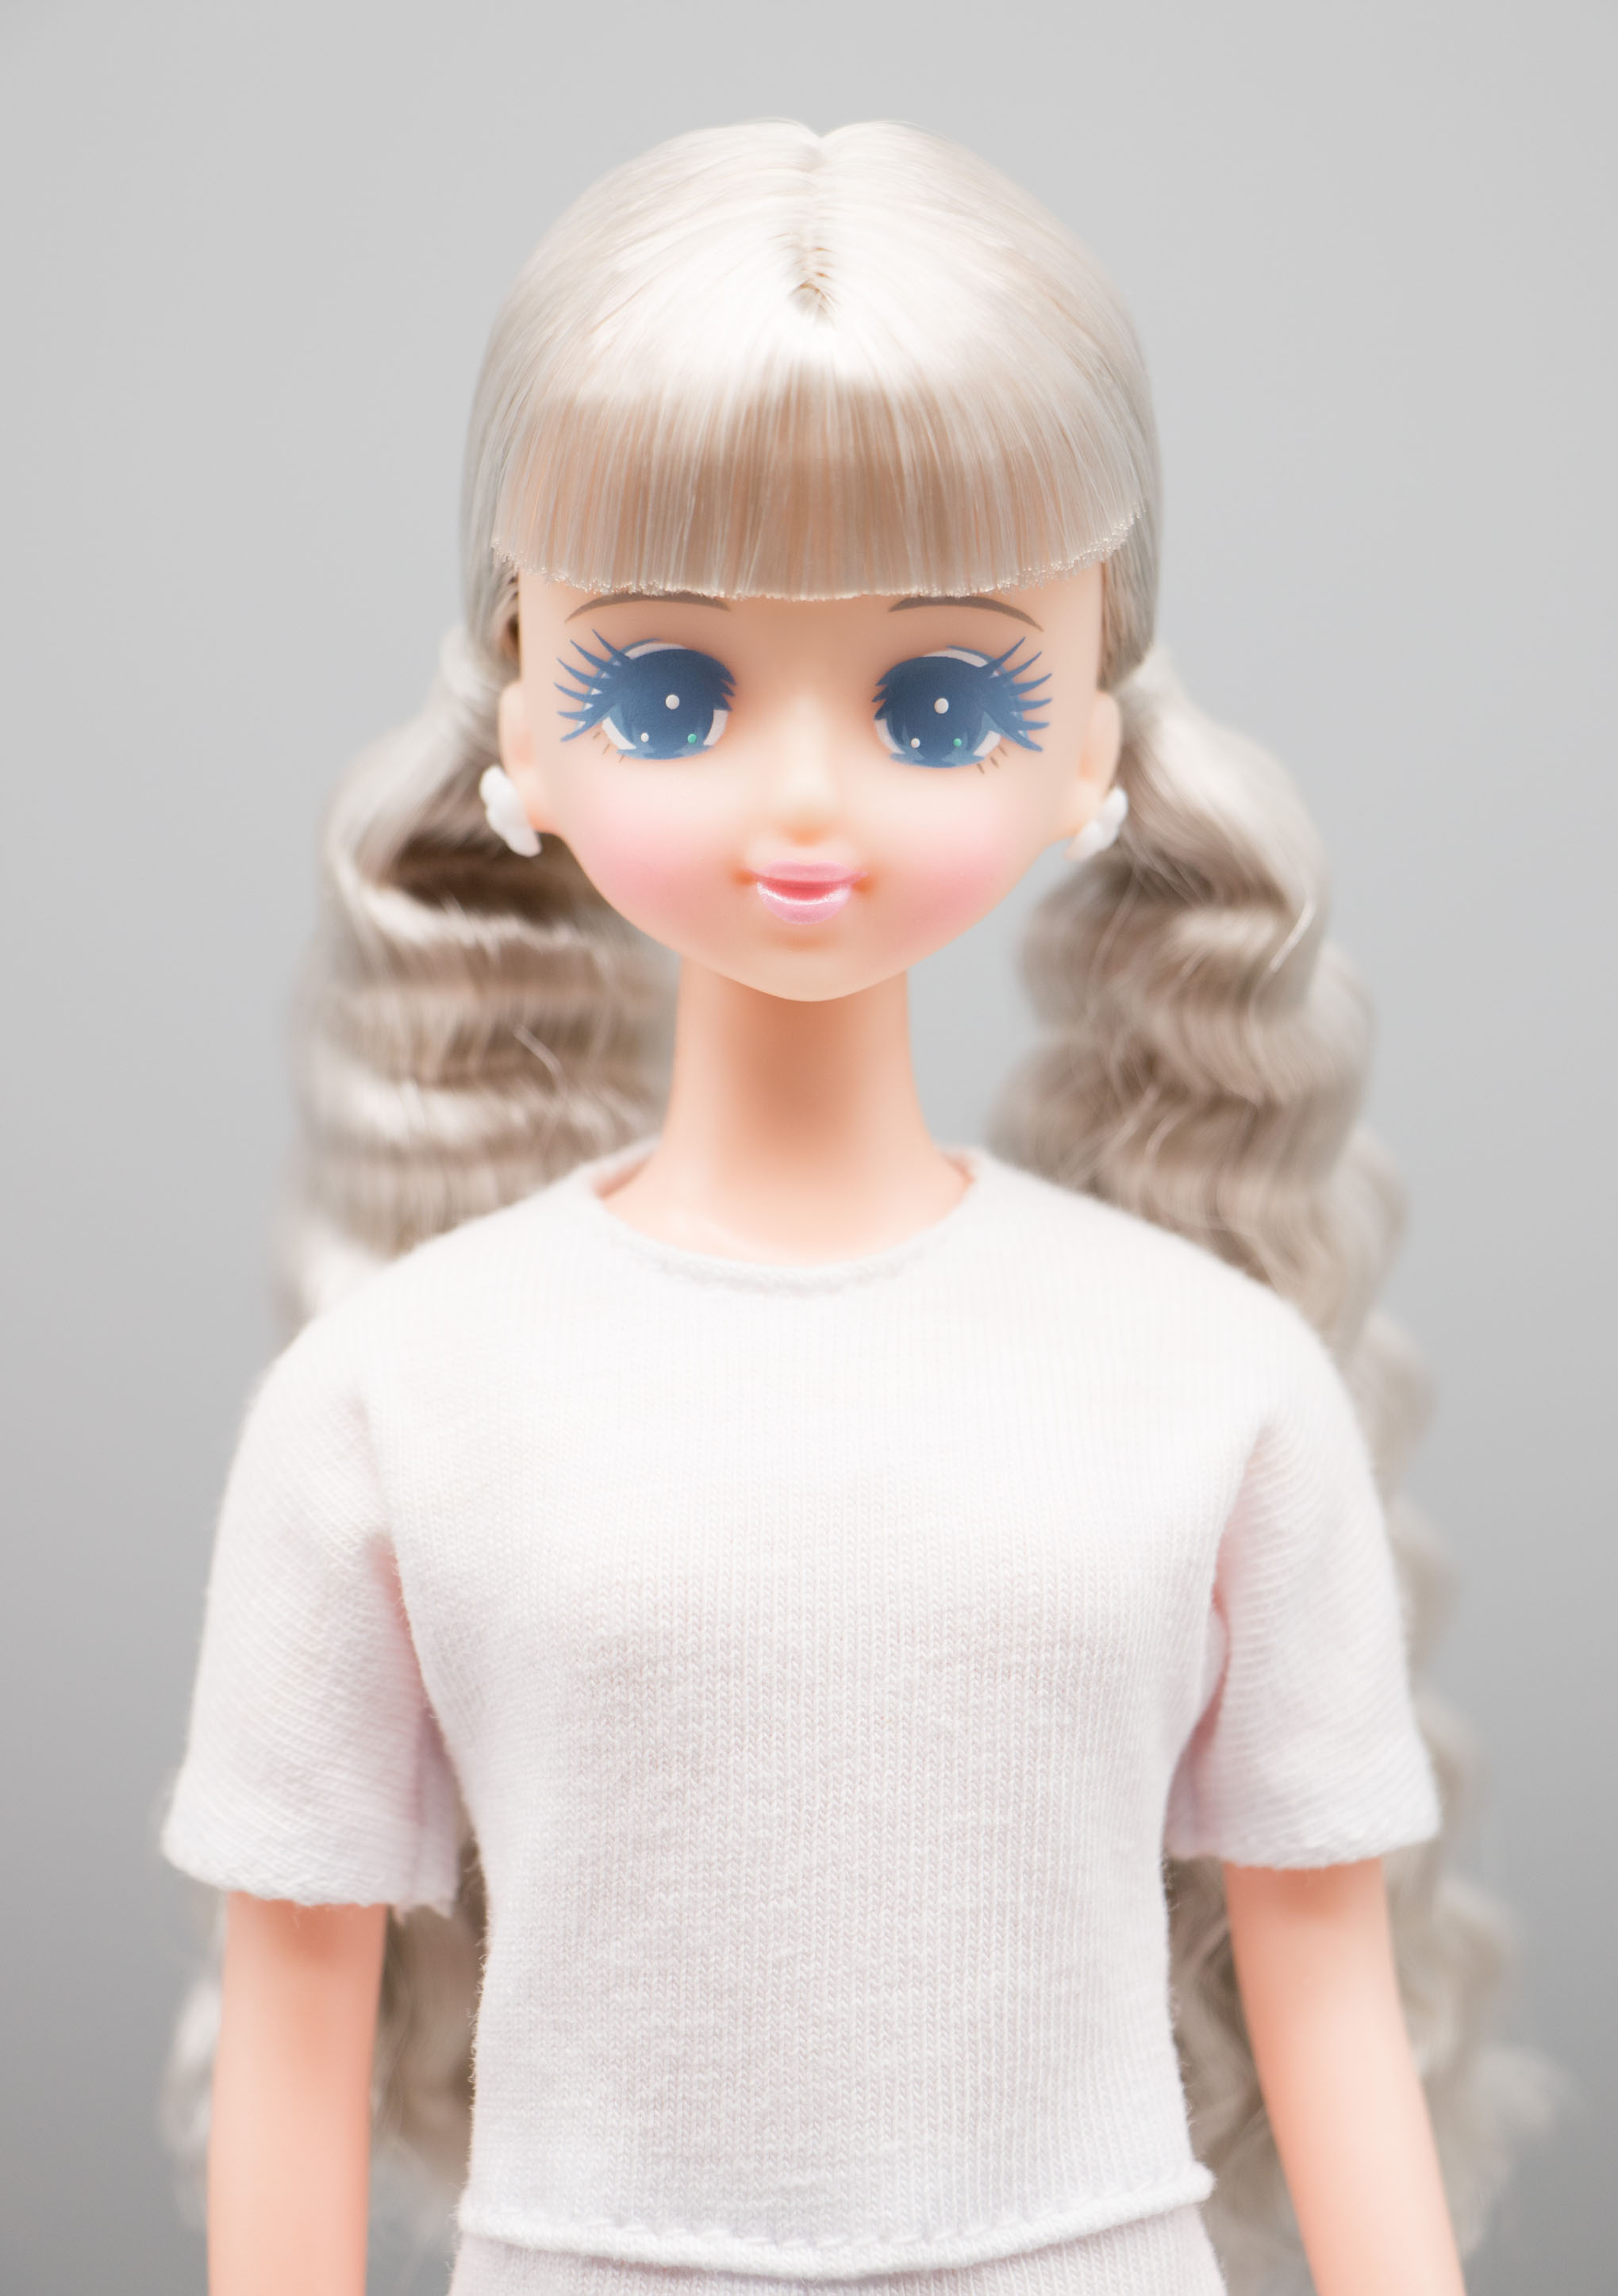 【高知インター店】 レア オリジナルドール プラスチックケース入り ジェニー他 リカちゃんキャッスル おもちゃ/人形